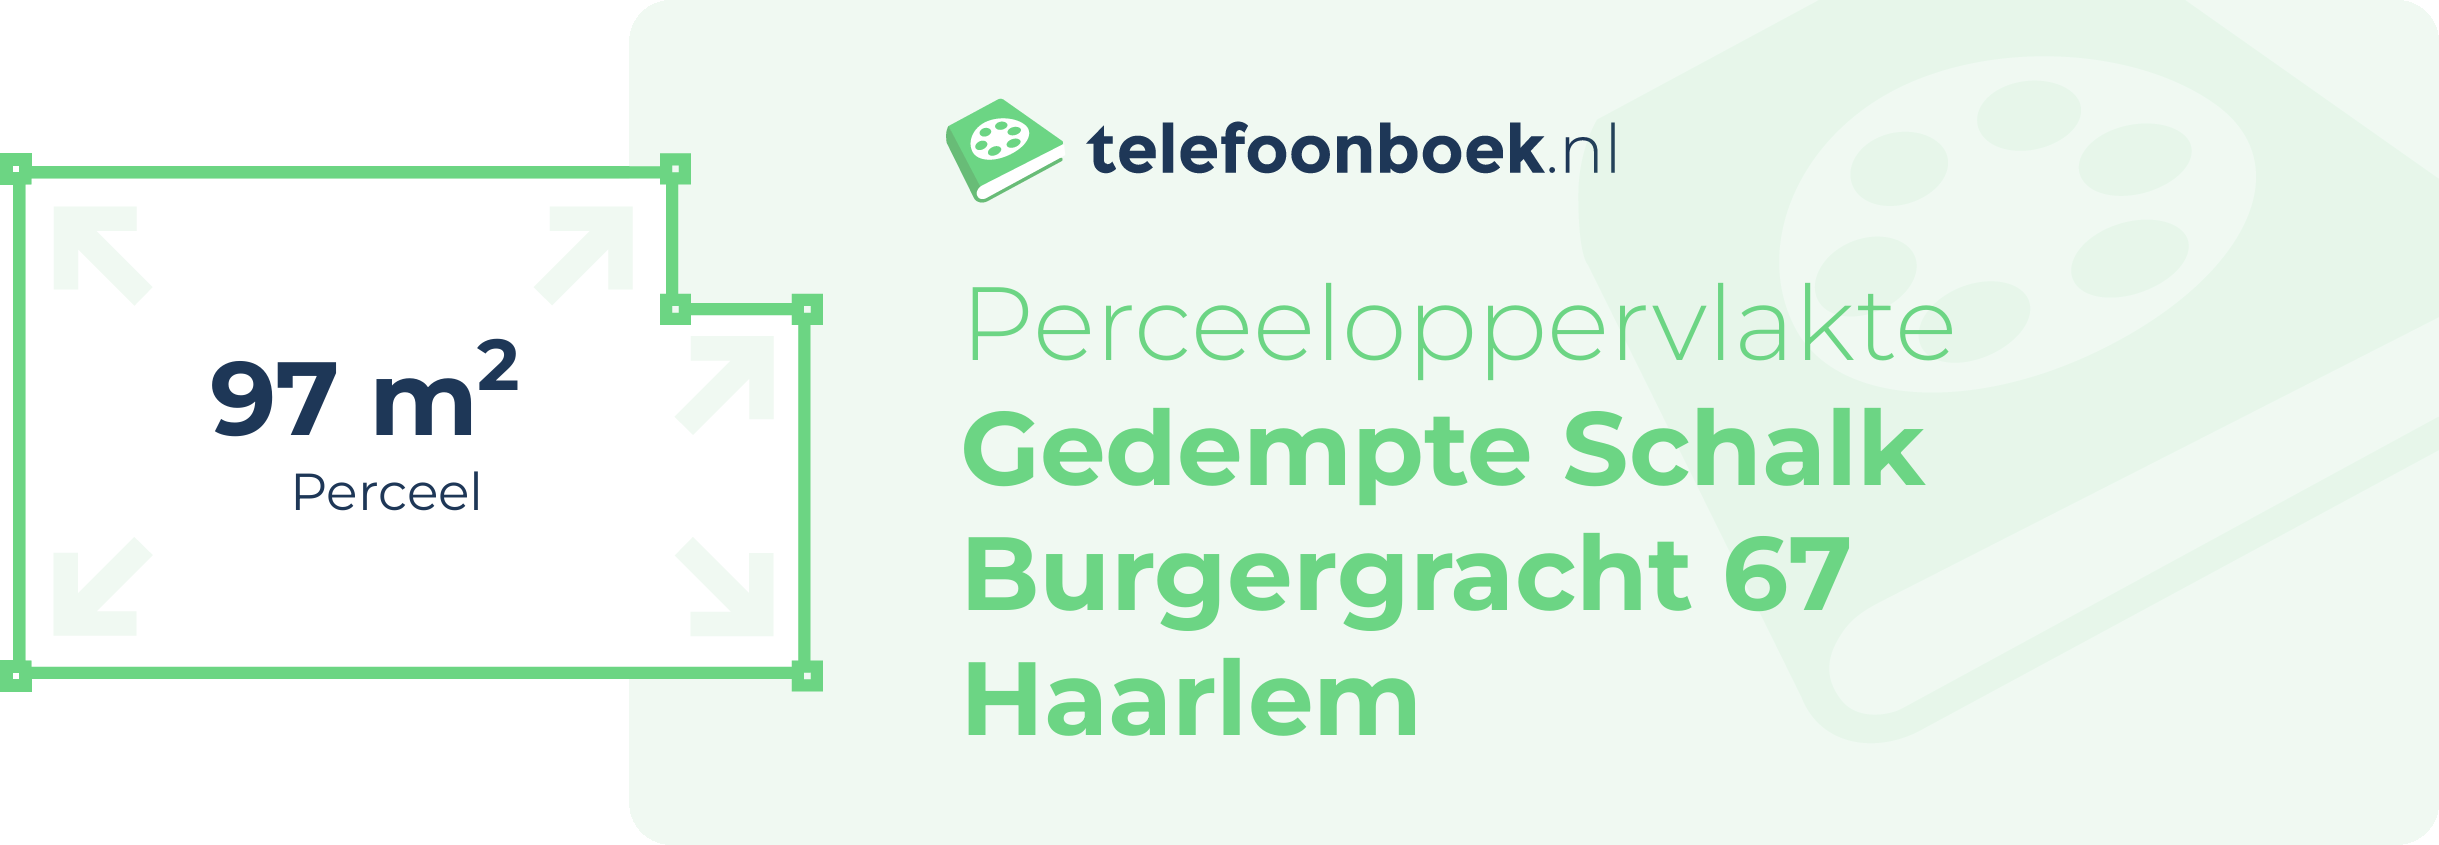 Perceeloppervlakte Gedempte Schalk Burgergracht 67 Haarlem